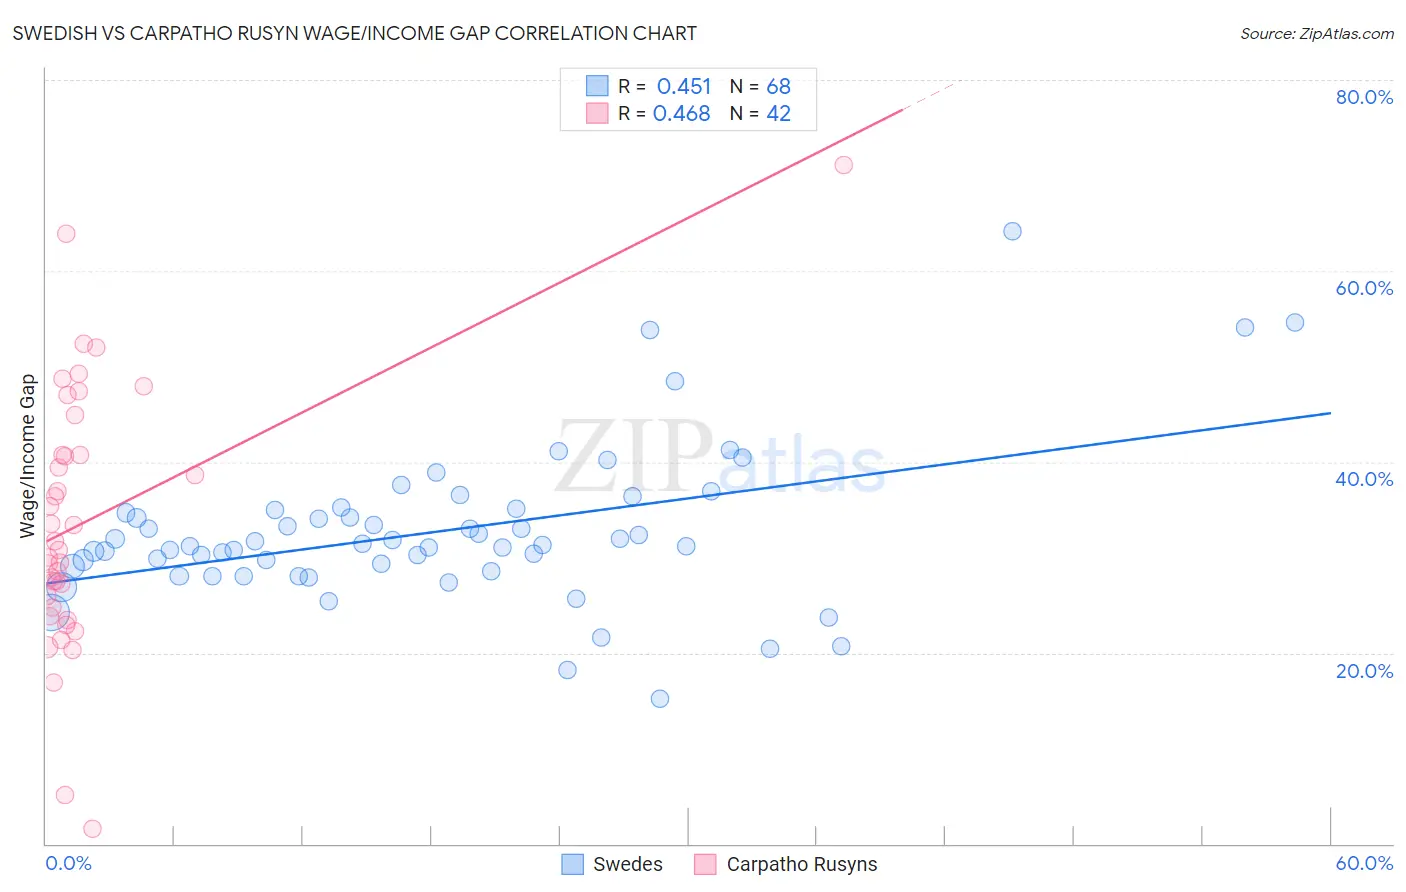 Swedish vs Carpatho Rusyn Wage/Income Gap